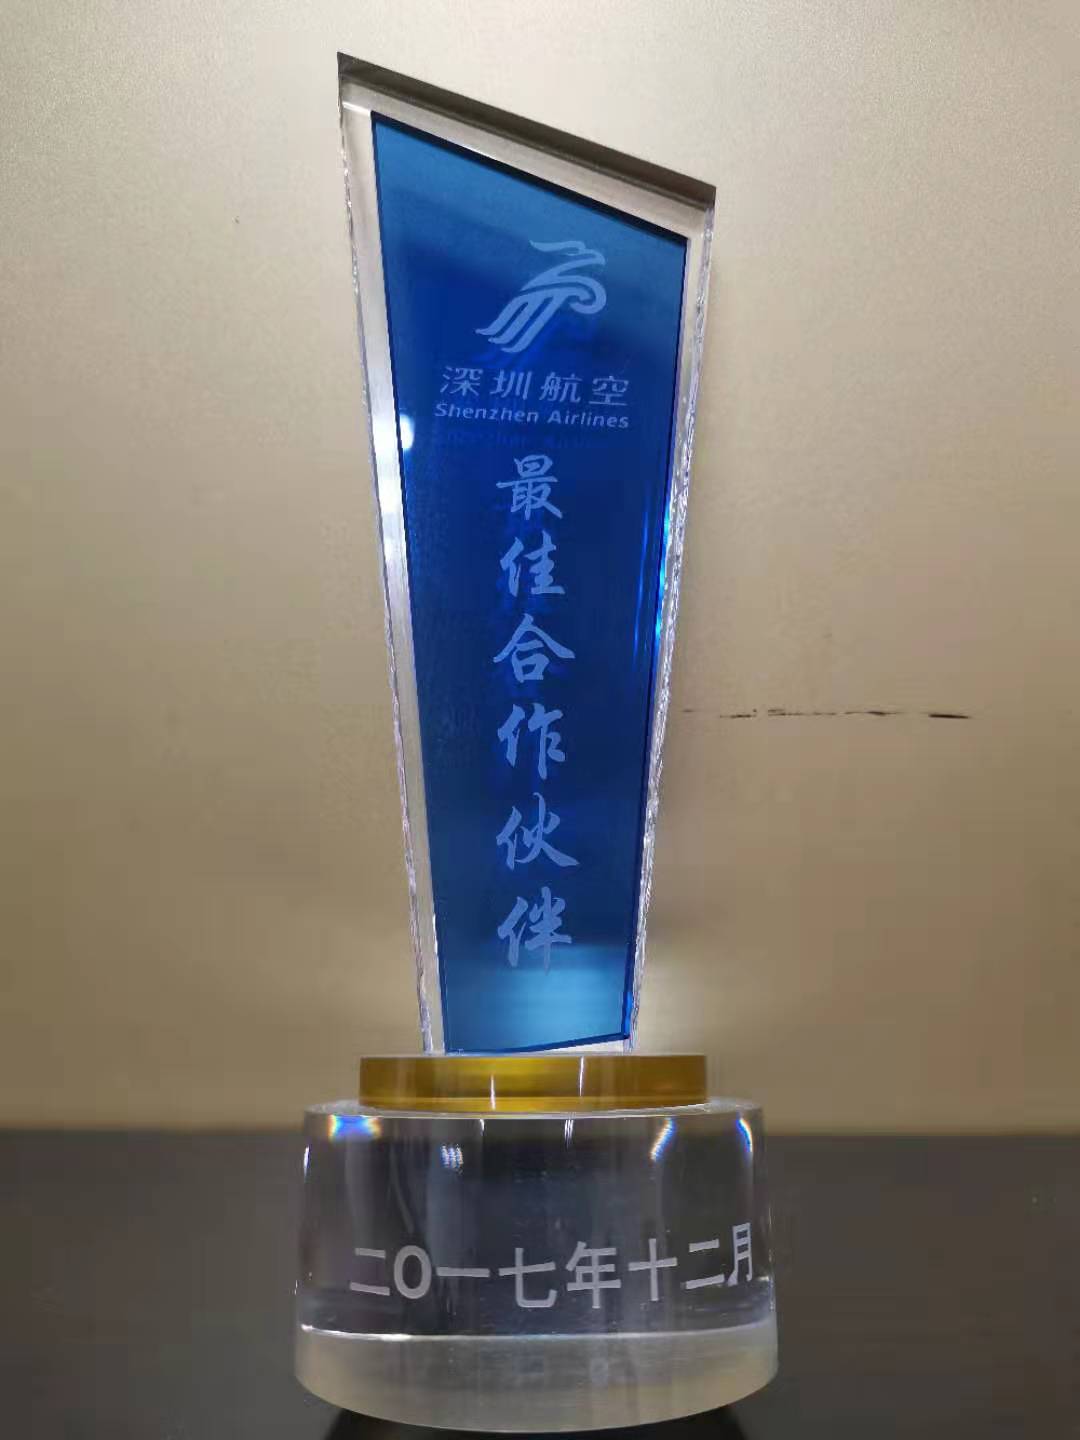 ZH Award 2017